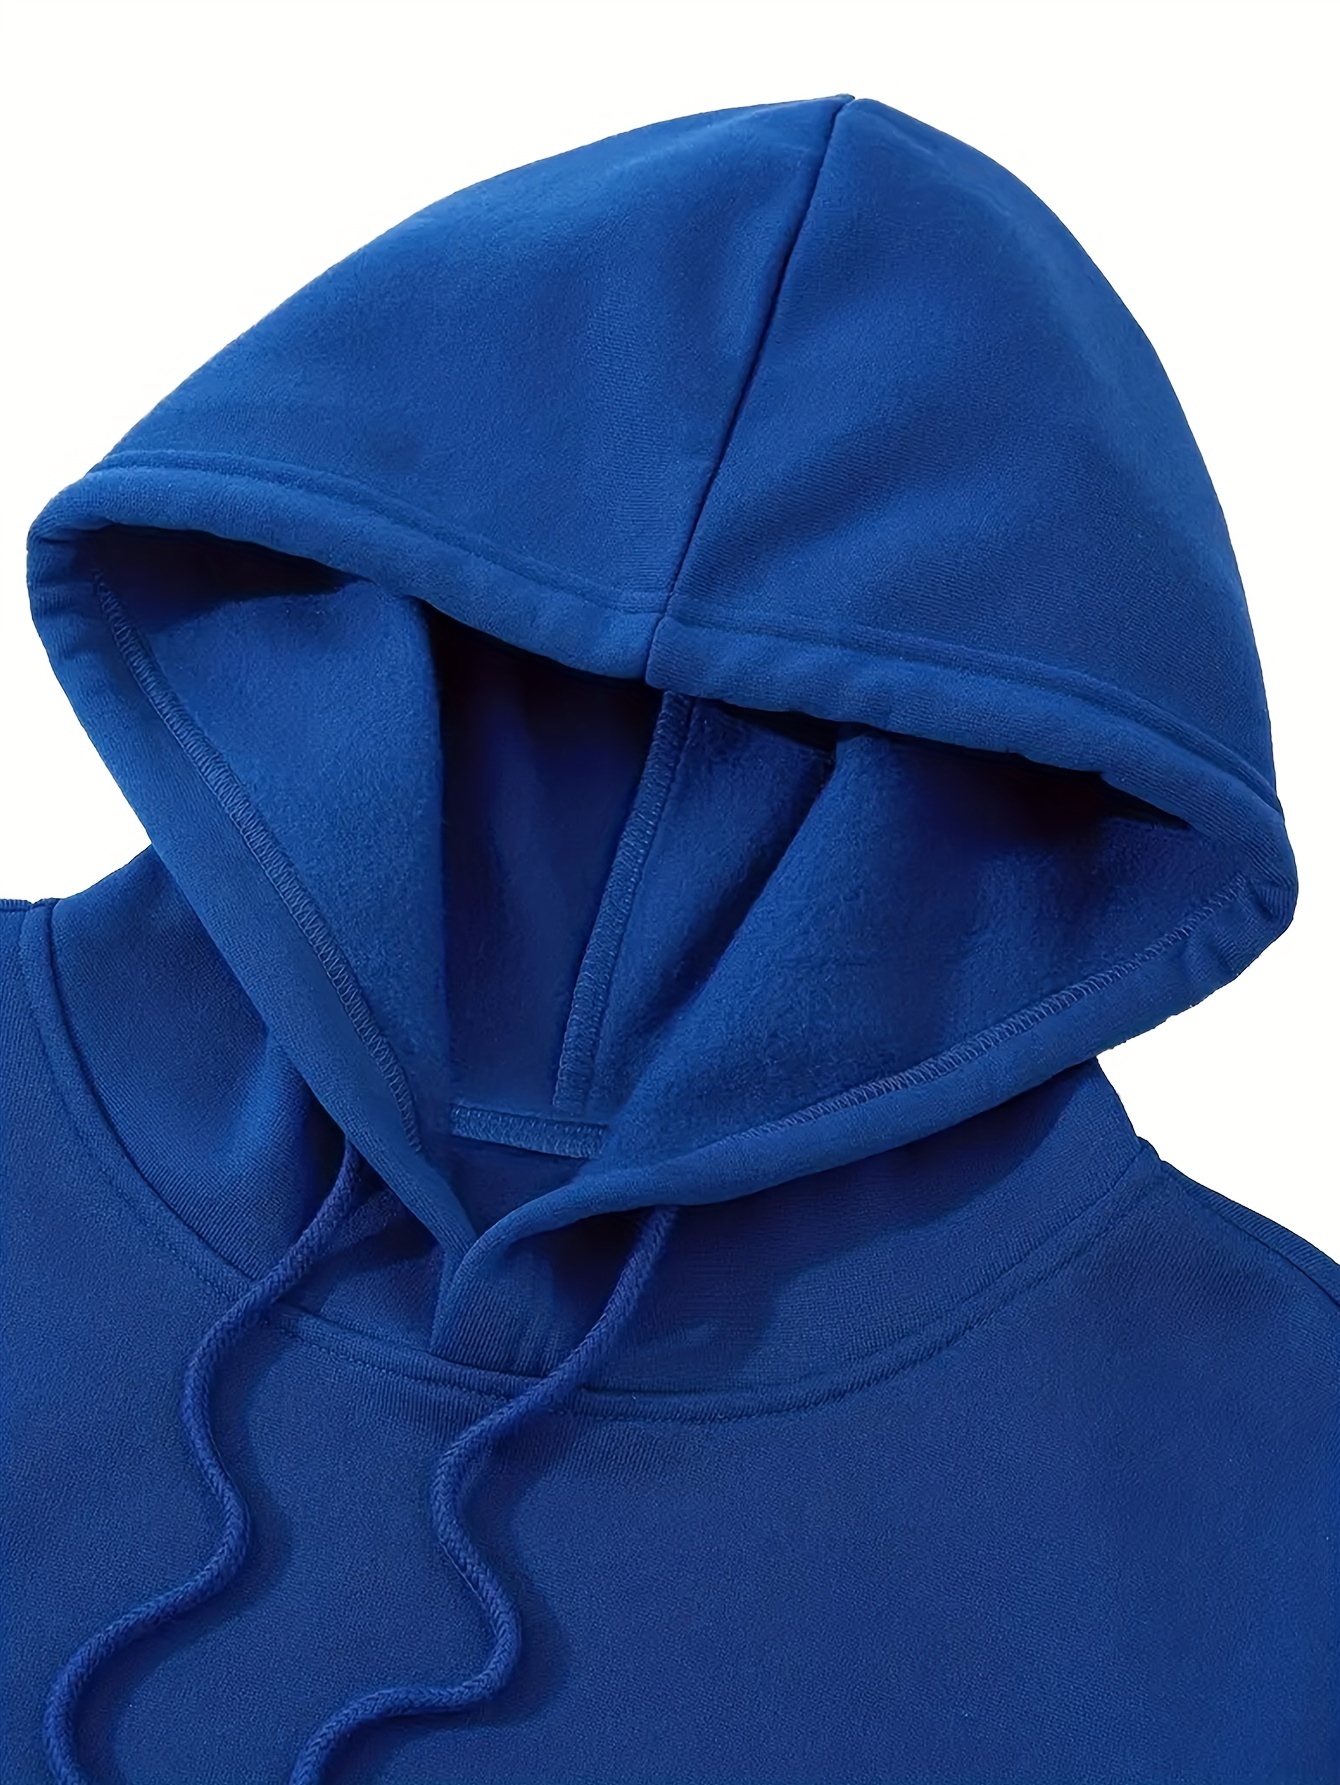 bus pattern warm hoodie with kangaroo pocket mens casual pullover hooded sweatshirt details 33